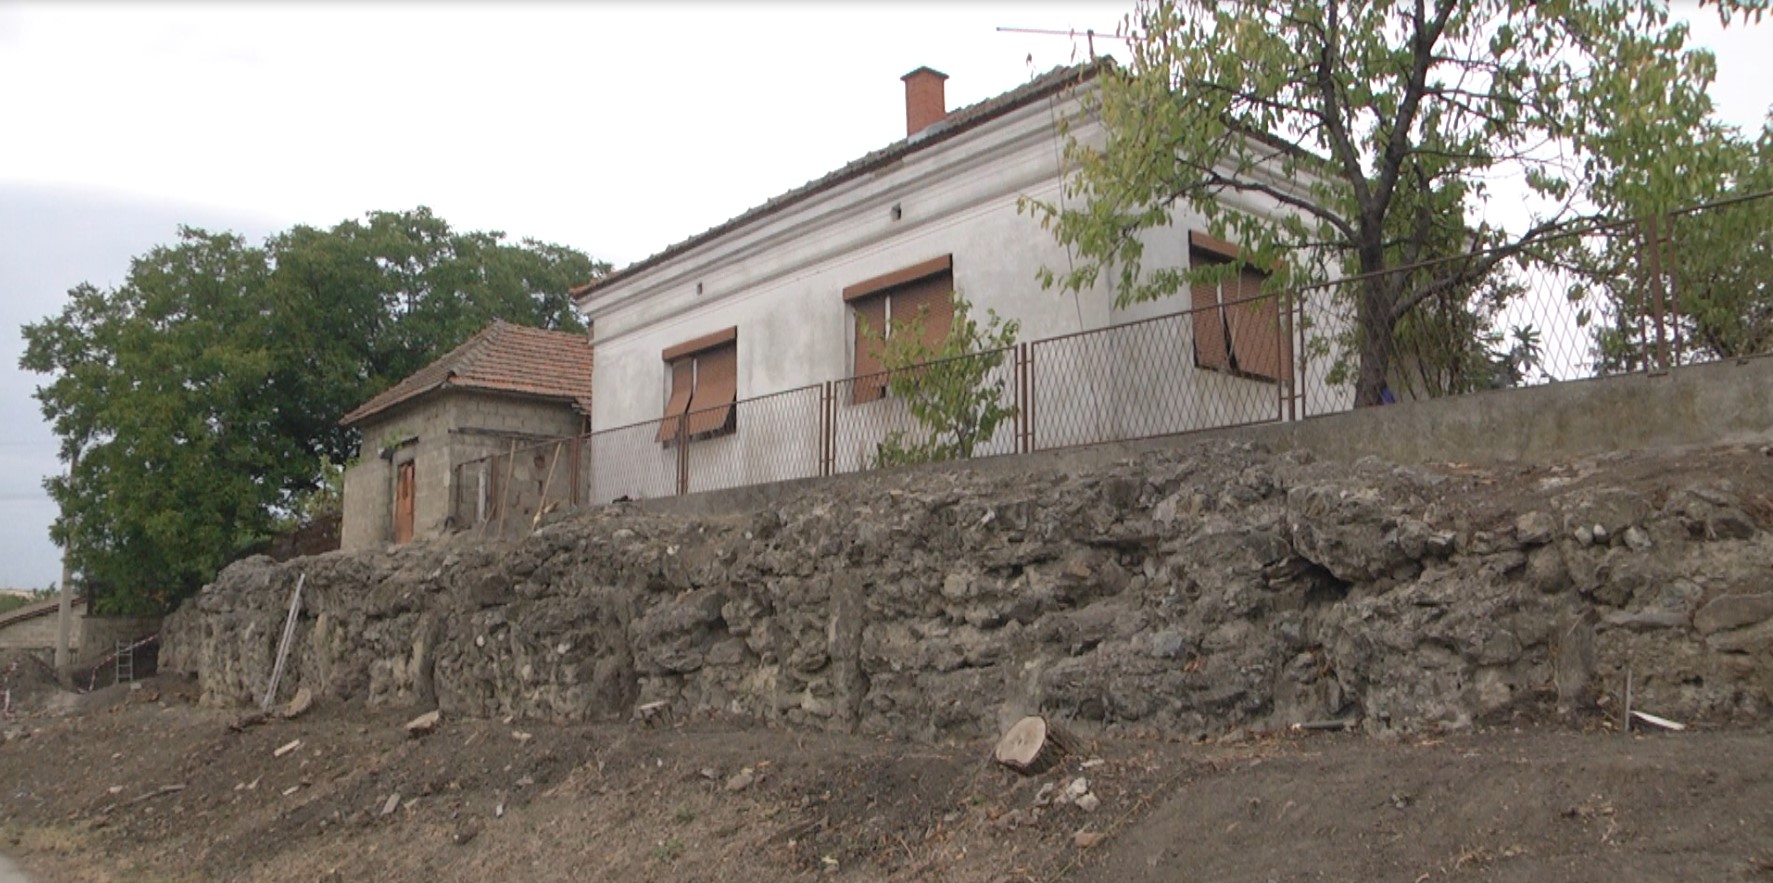 U toku su arheološka istraživanja u okviru projekta “Zaštitna arheološka iskopavanja Aquesa u Prahovu